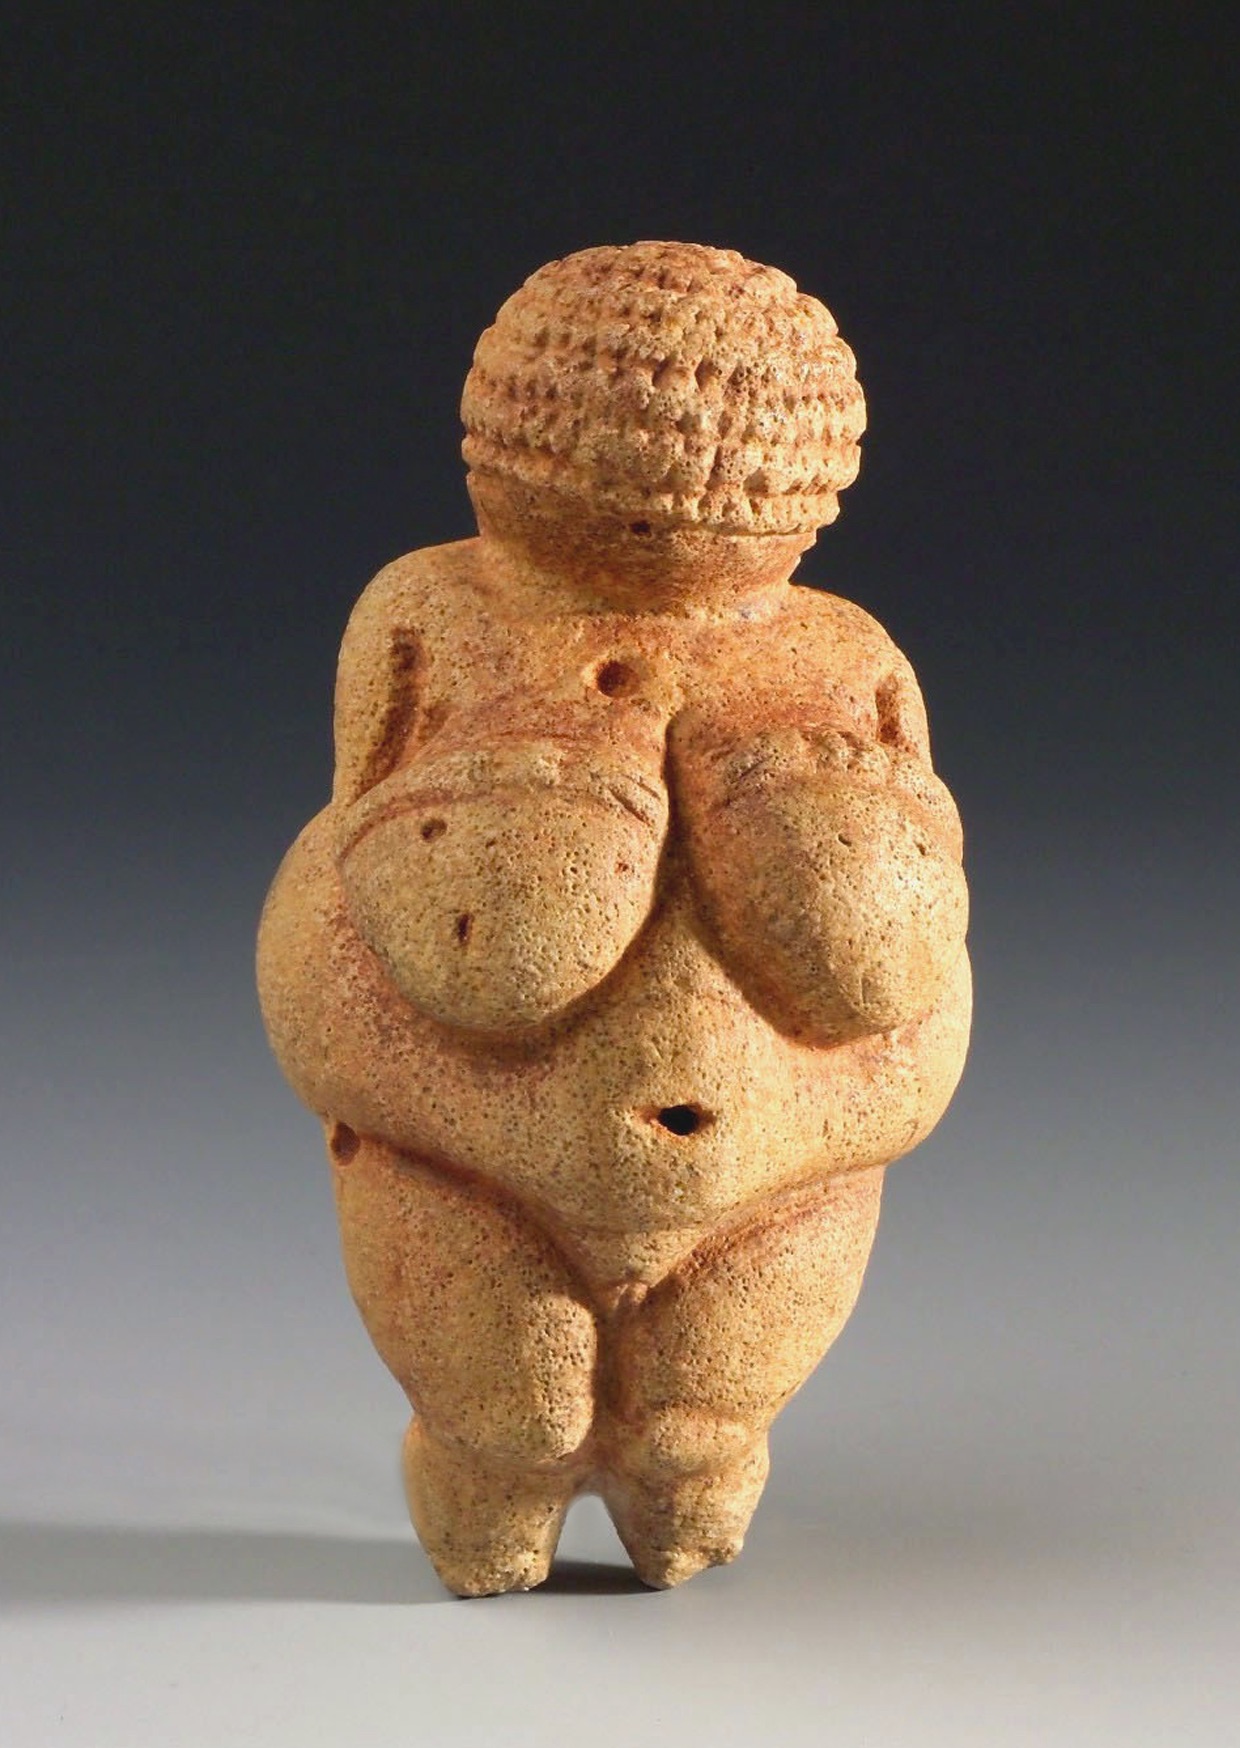 Willendorf'un Venüsü by Bilinmeyen Sanatçı - 30,000 BCE - 11.1 cm 